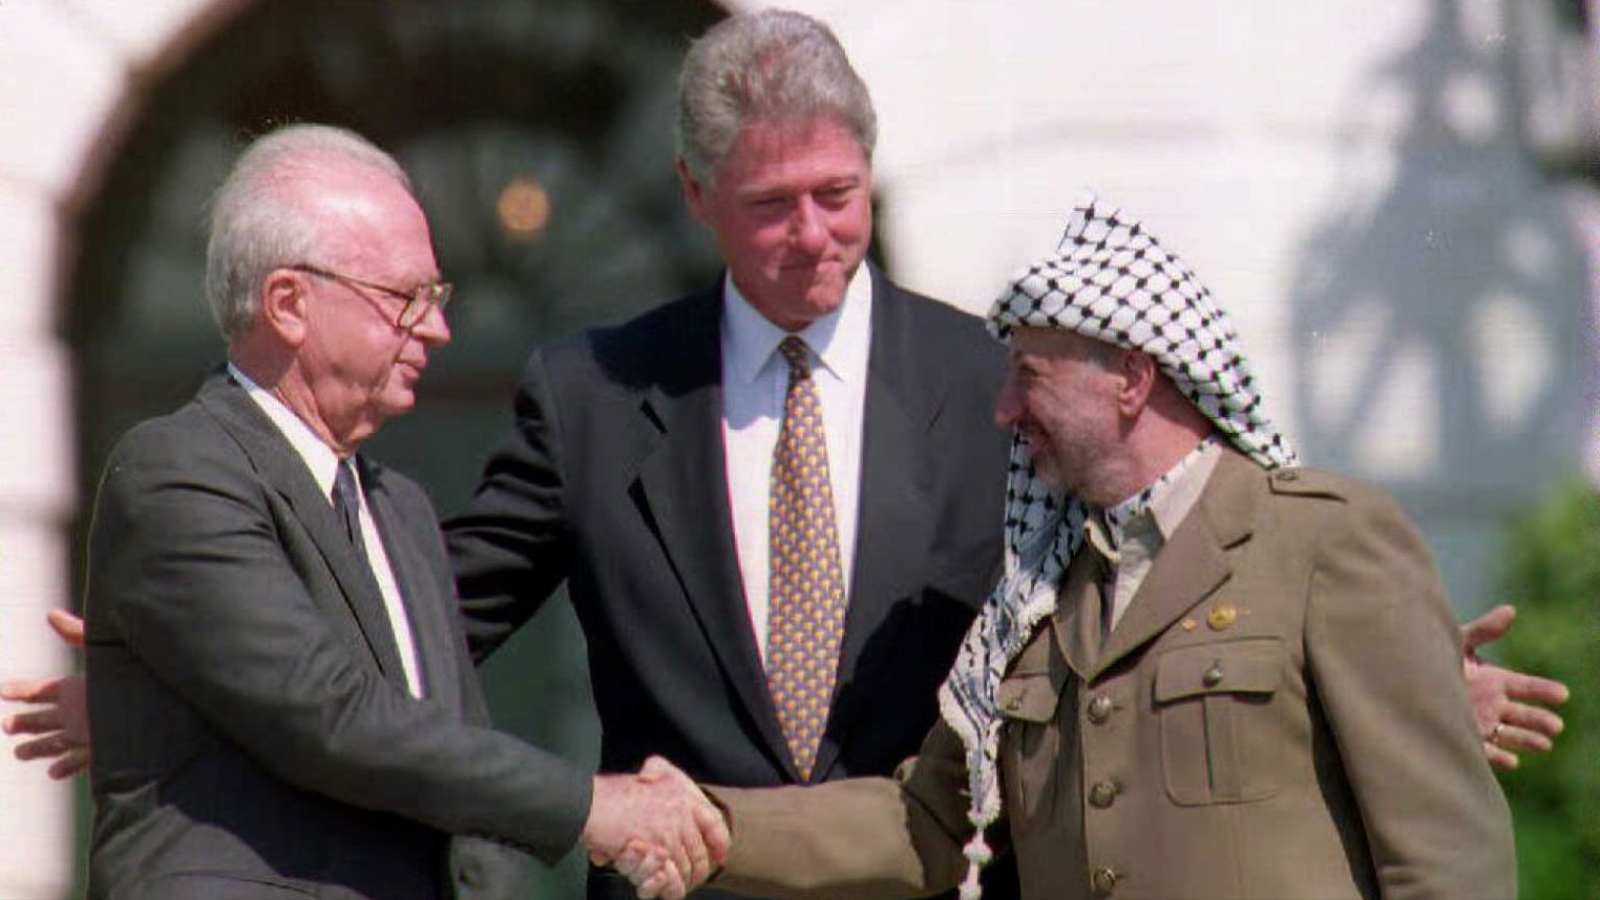 يعتبر اتفاق أوسلو منعطفا مهما في مسار القضية الفلسطينية، فقد أنهى النزاع المسلح بين منظمة التحرير الفلسطينية وإسرائيل، ورتب لإقامة سلطة وطنية فلسطينية في الضفة الغربية وغزة